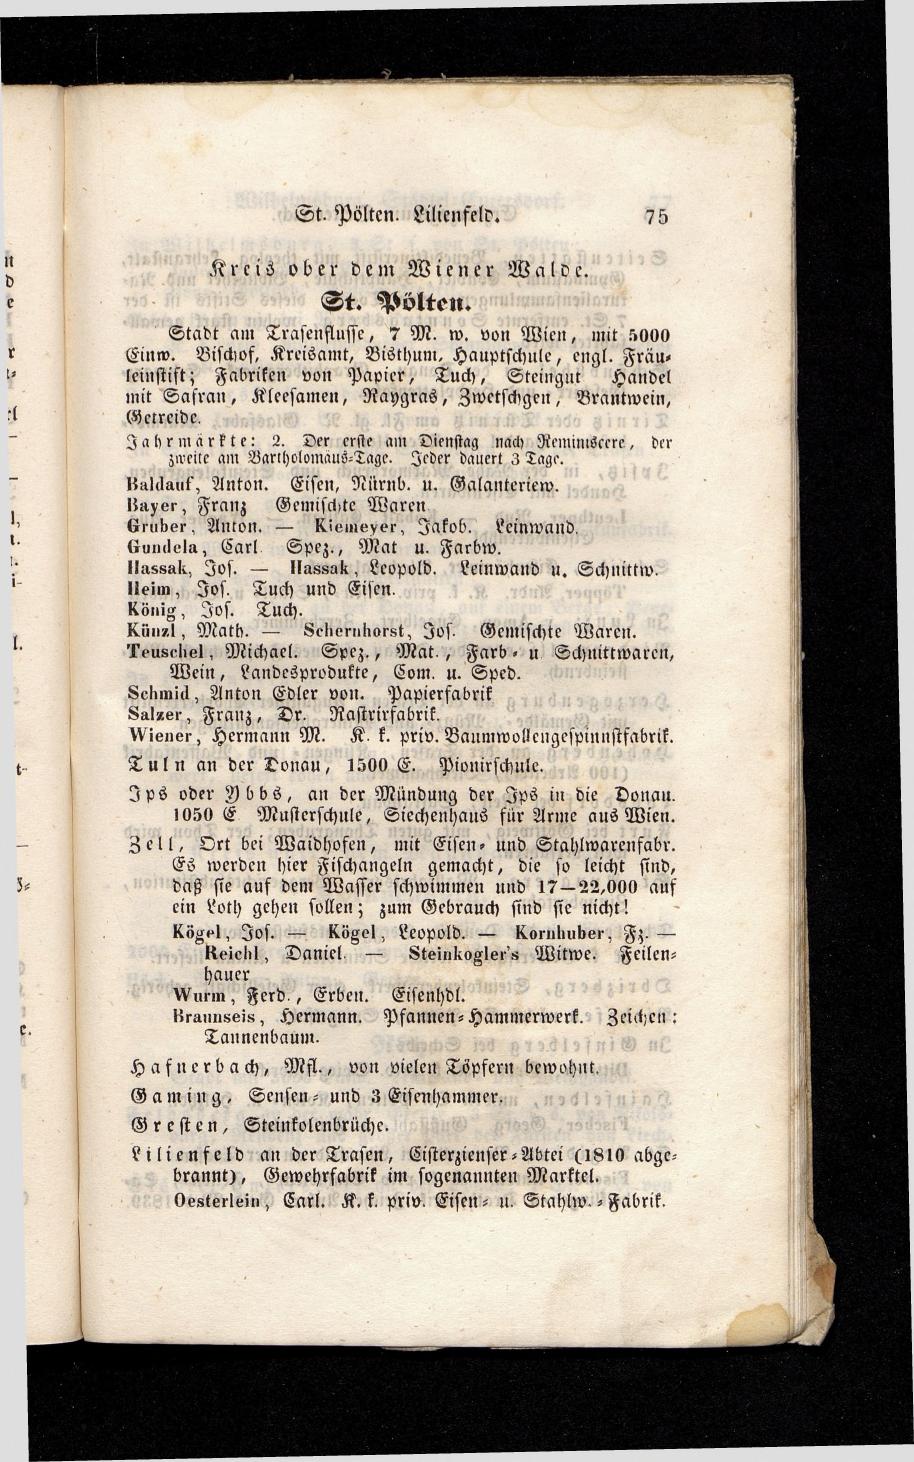 Grosses Adressbuch der Kaufleute. No. 13. Oesterreich ober u. unter der Enns 1844 - Seite 79